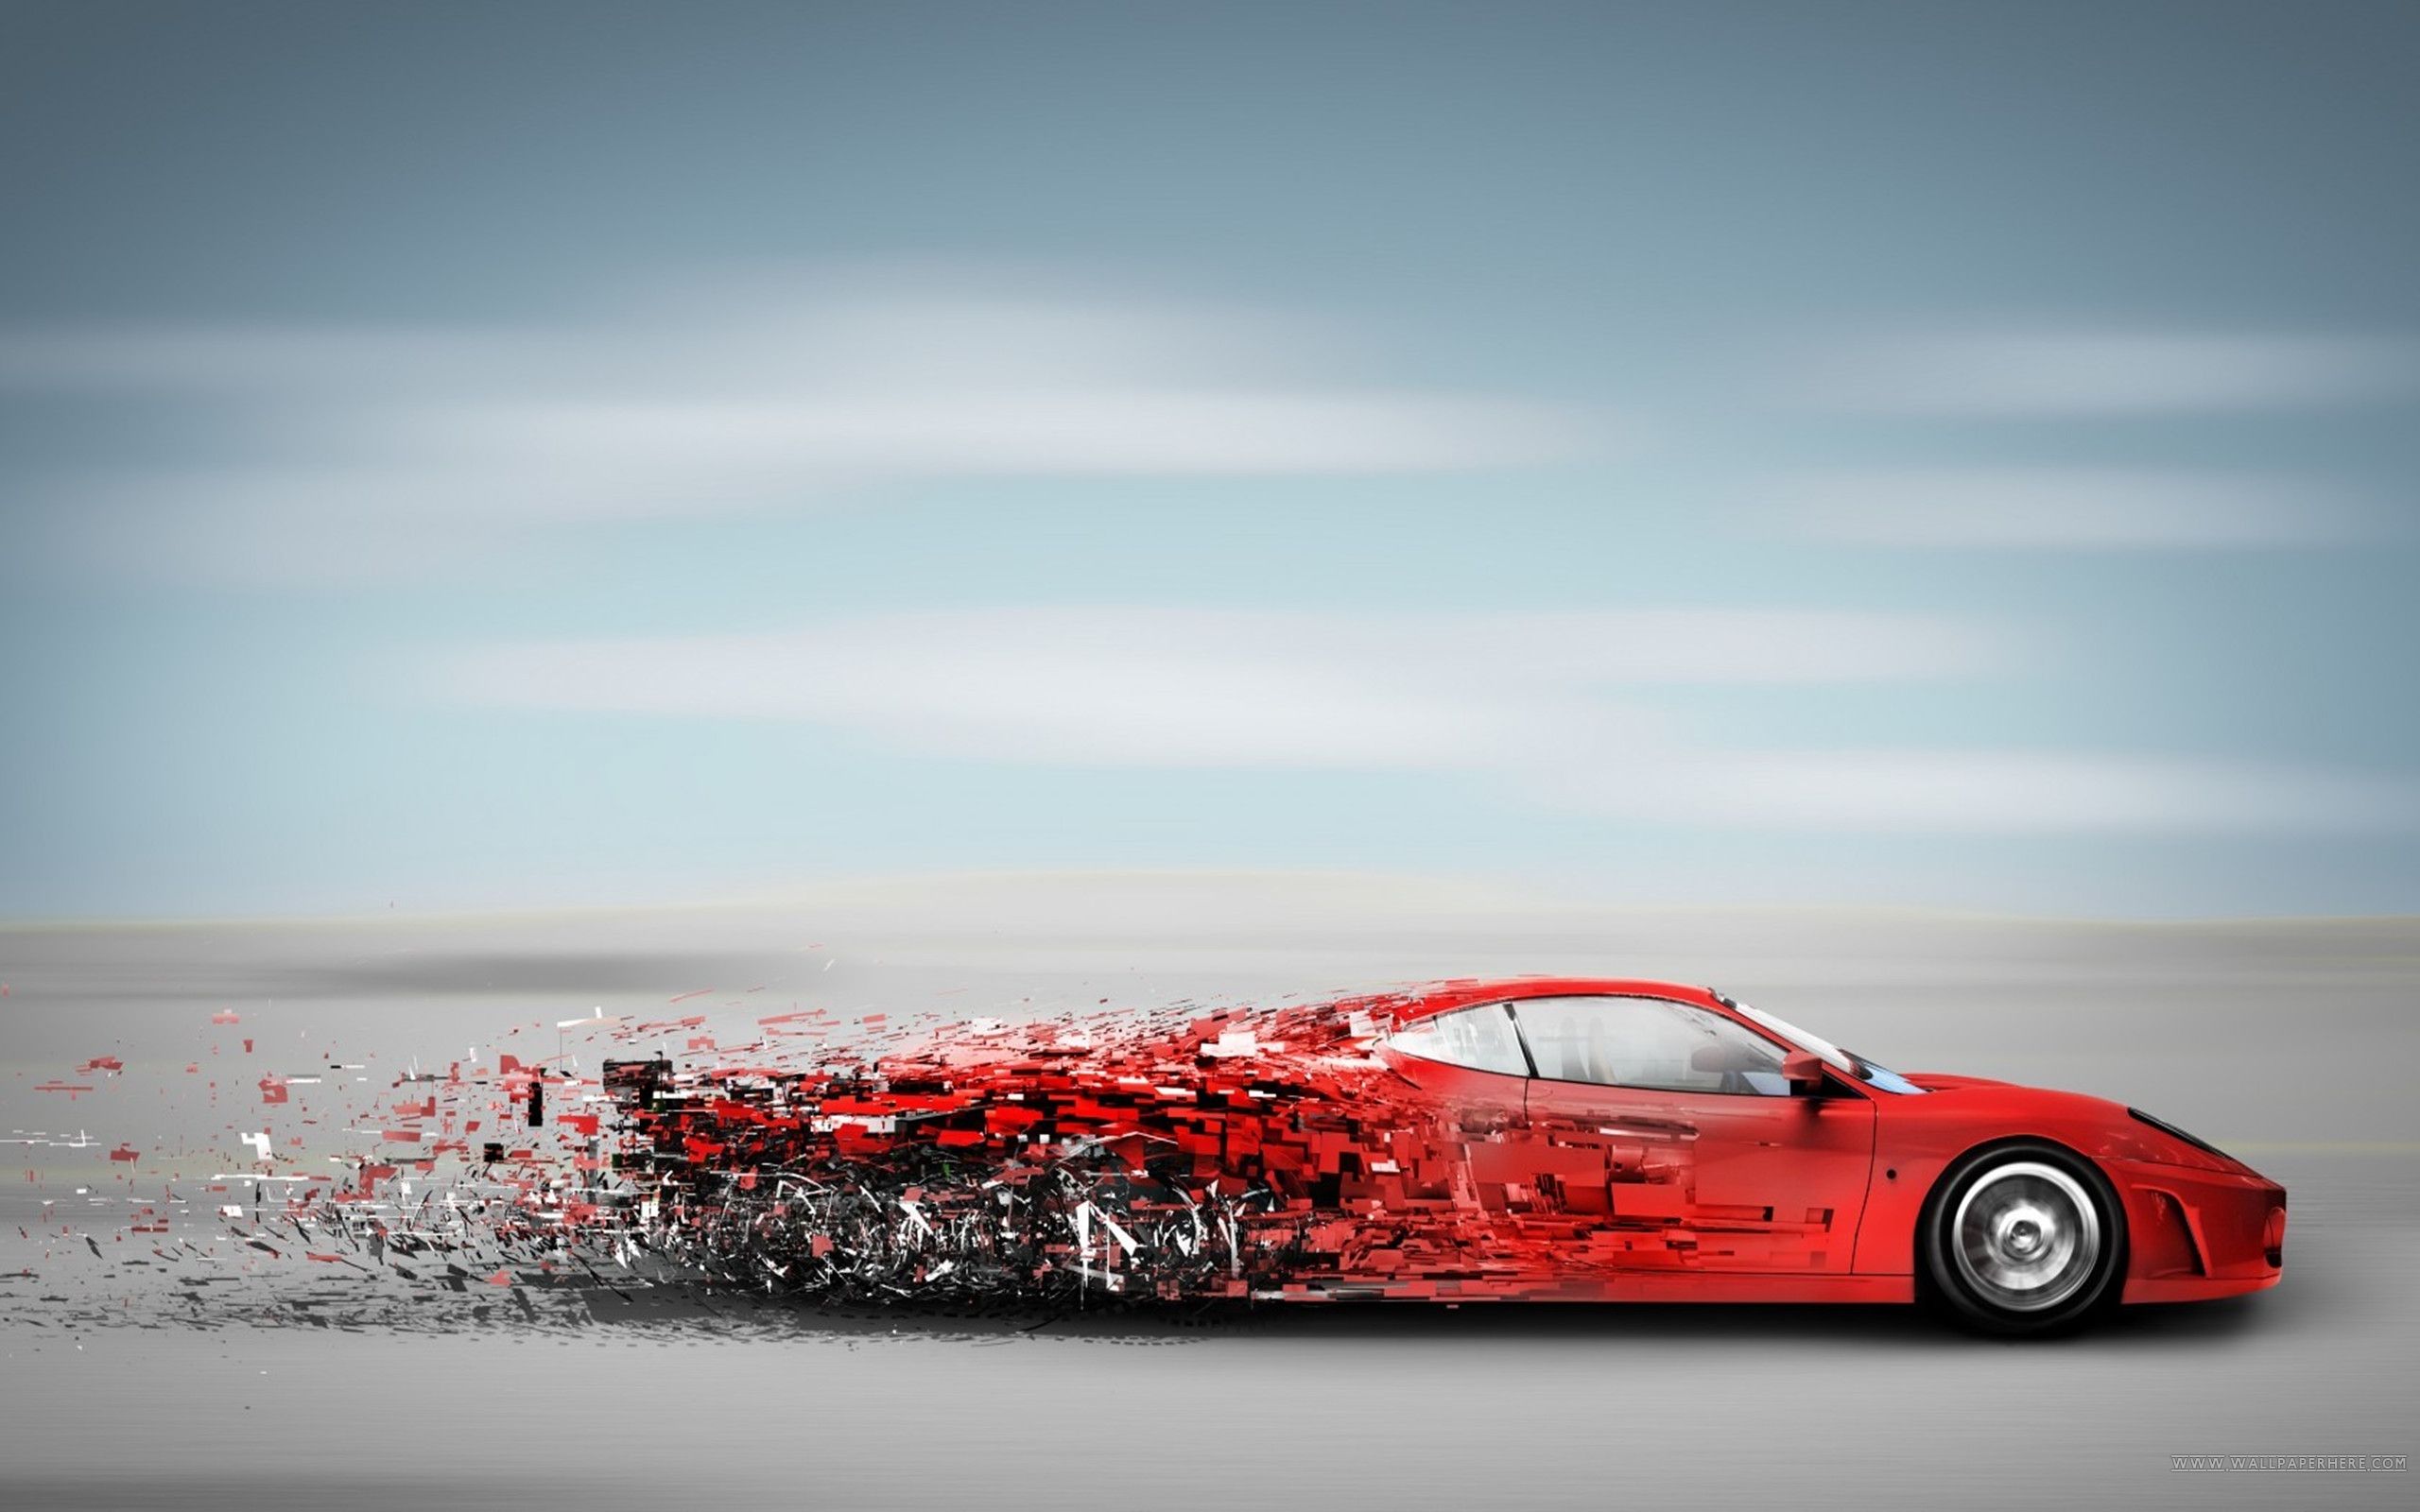 عکس کامپیوتری زیبا  از ماشین قرمز با کیفیت فوق العاده 